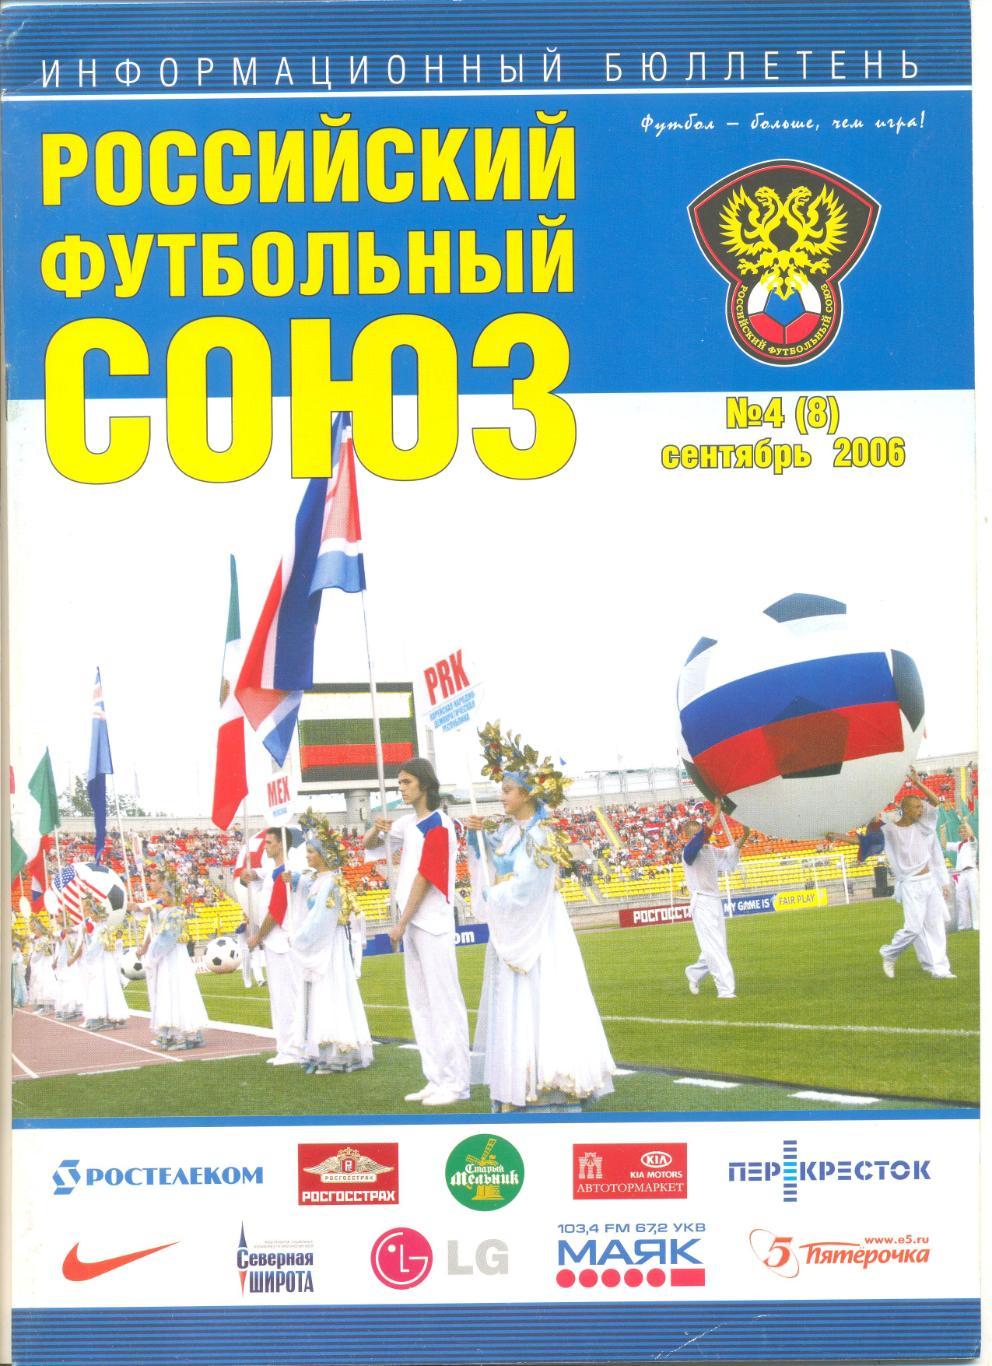 Информационный бюллетень РФС №4 (8) 2006 г.